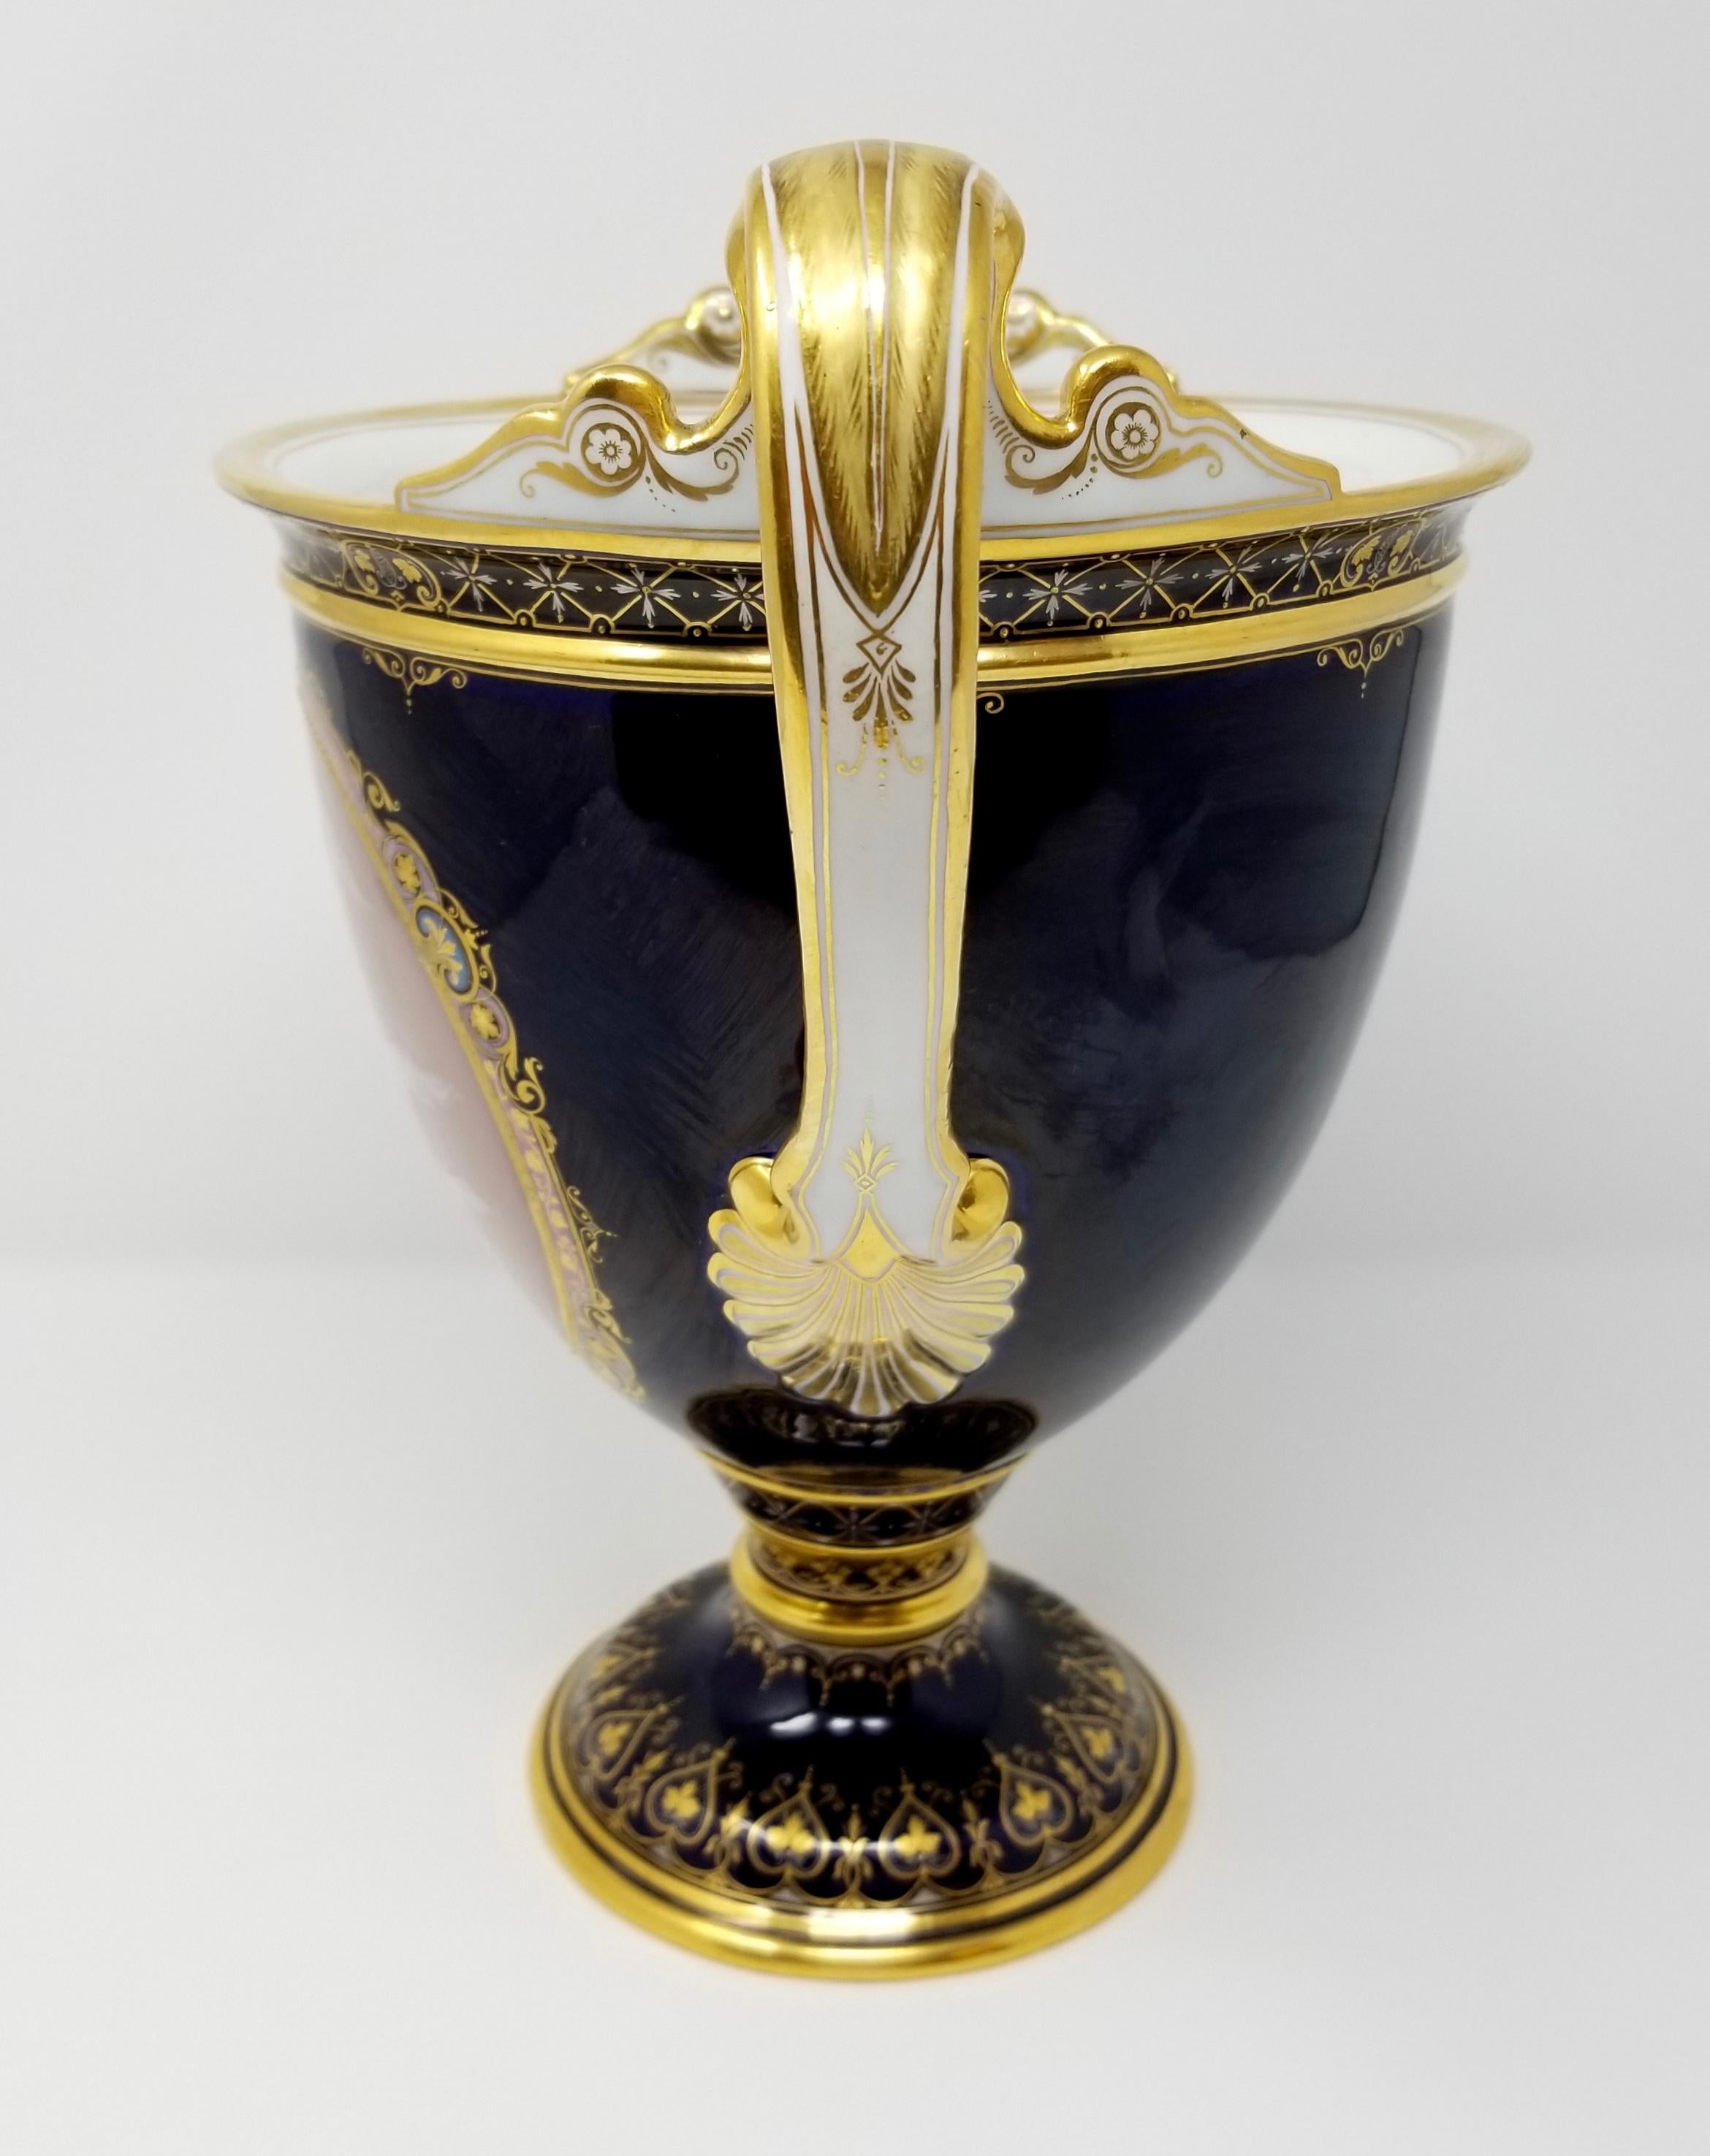 Königlich-kobaltblaue Meissener Pate Sur Pate-Vase aus dem 19. Jahrhundert mit einer auf einem Zentauren sitzenden Jungfrau. Wunderschön dekoriert in Kobaltblau, Lachsrosa, 24-karätigem gebürstetem Golddekor und dem wunderbar bekannten reinen Weiß,